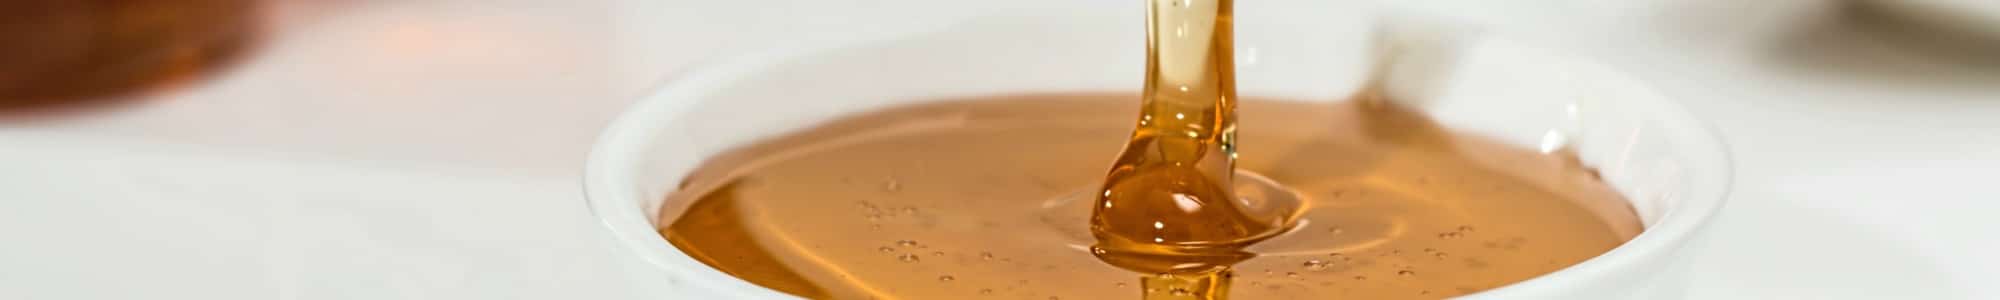 Honey banner image